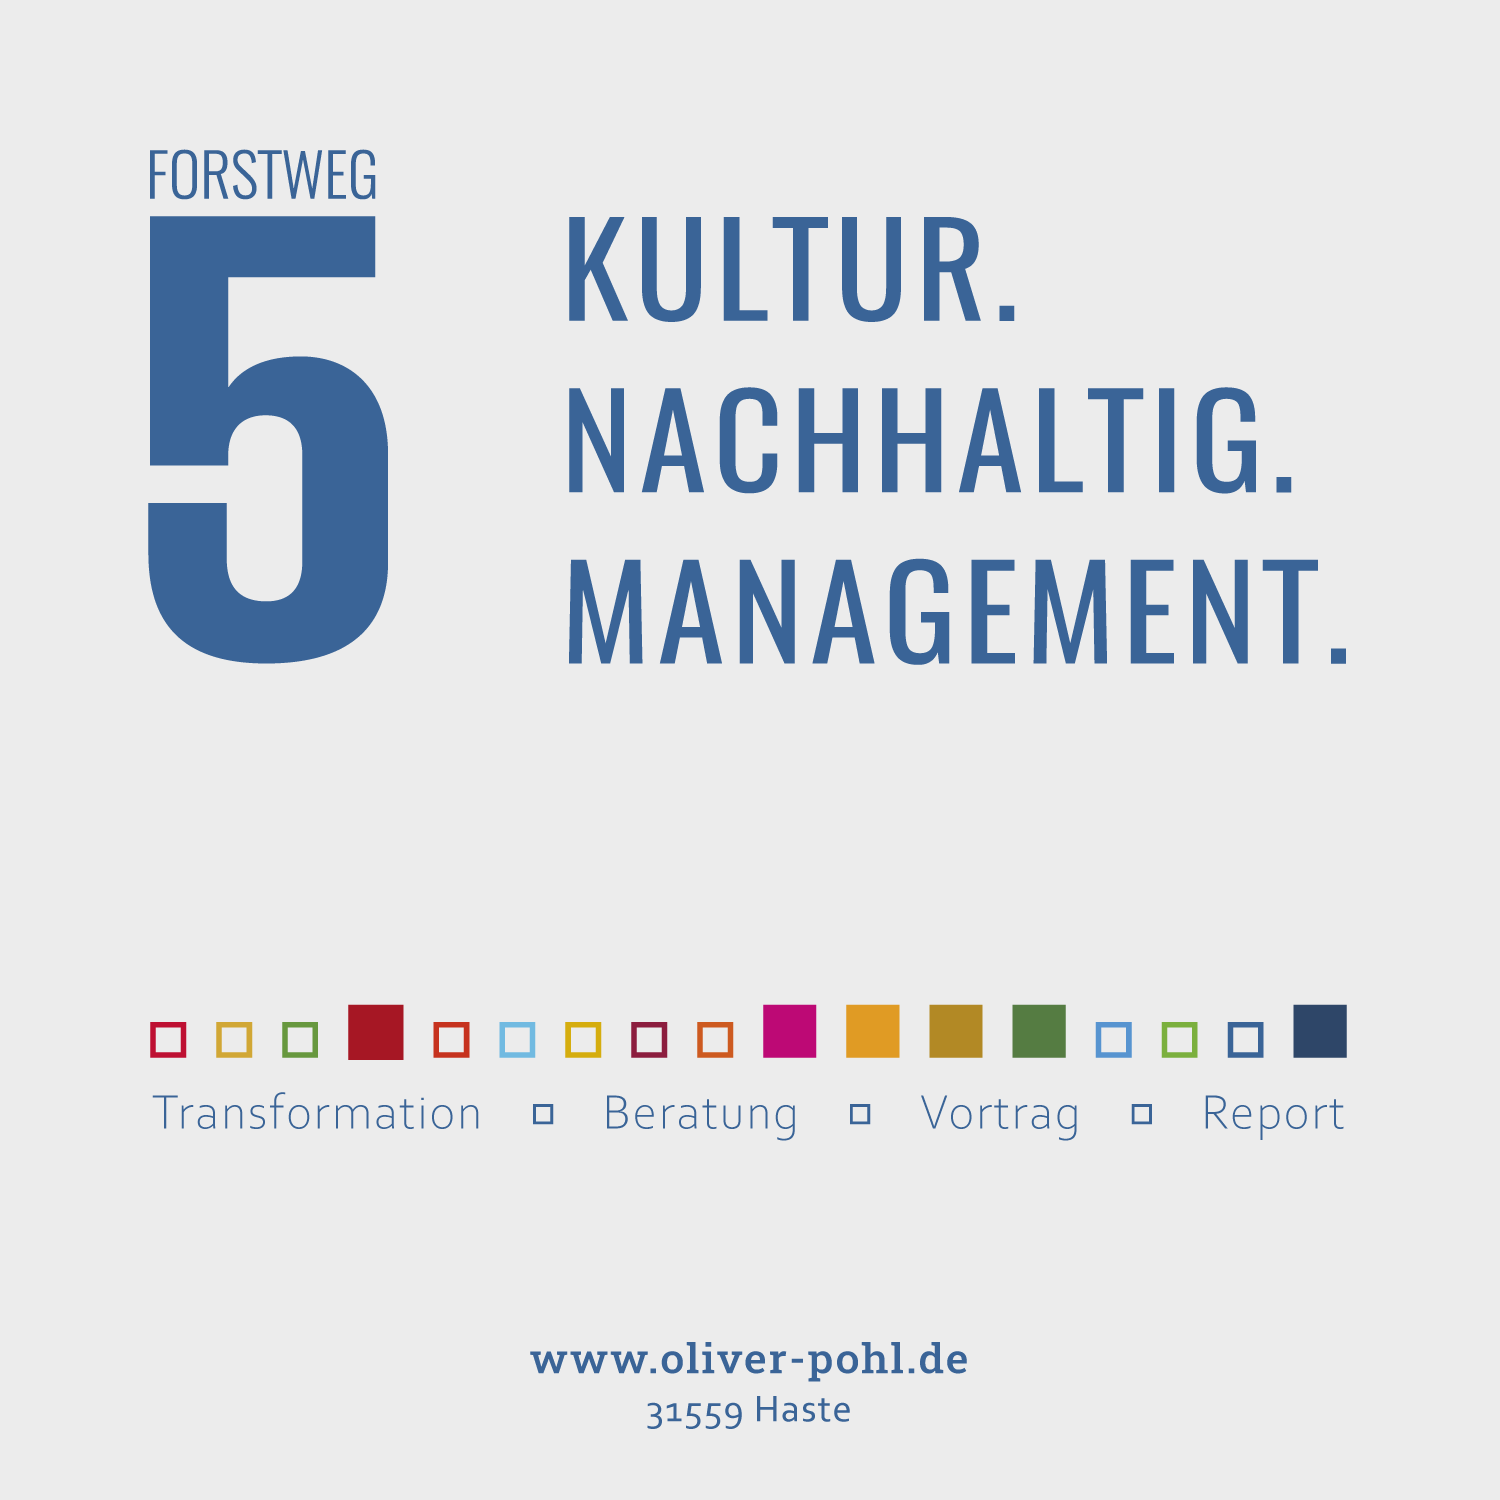 Nachhaltiges Kulturmanagement in Haste, Wunstorf, Neustadt am Rübenberge, Hannover,  Kultur Kulturring Wunstorf, Bad Nenndorf 